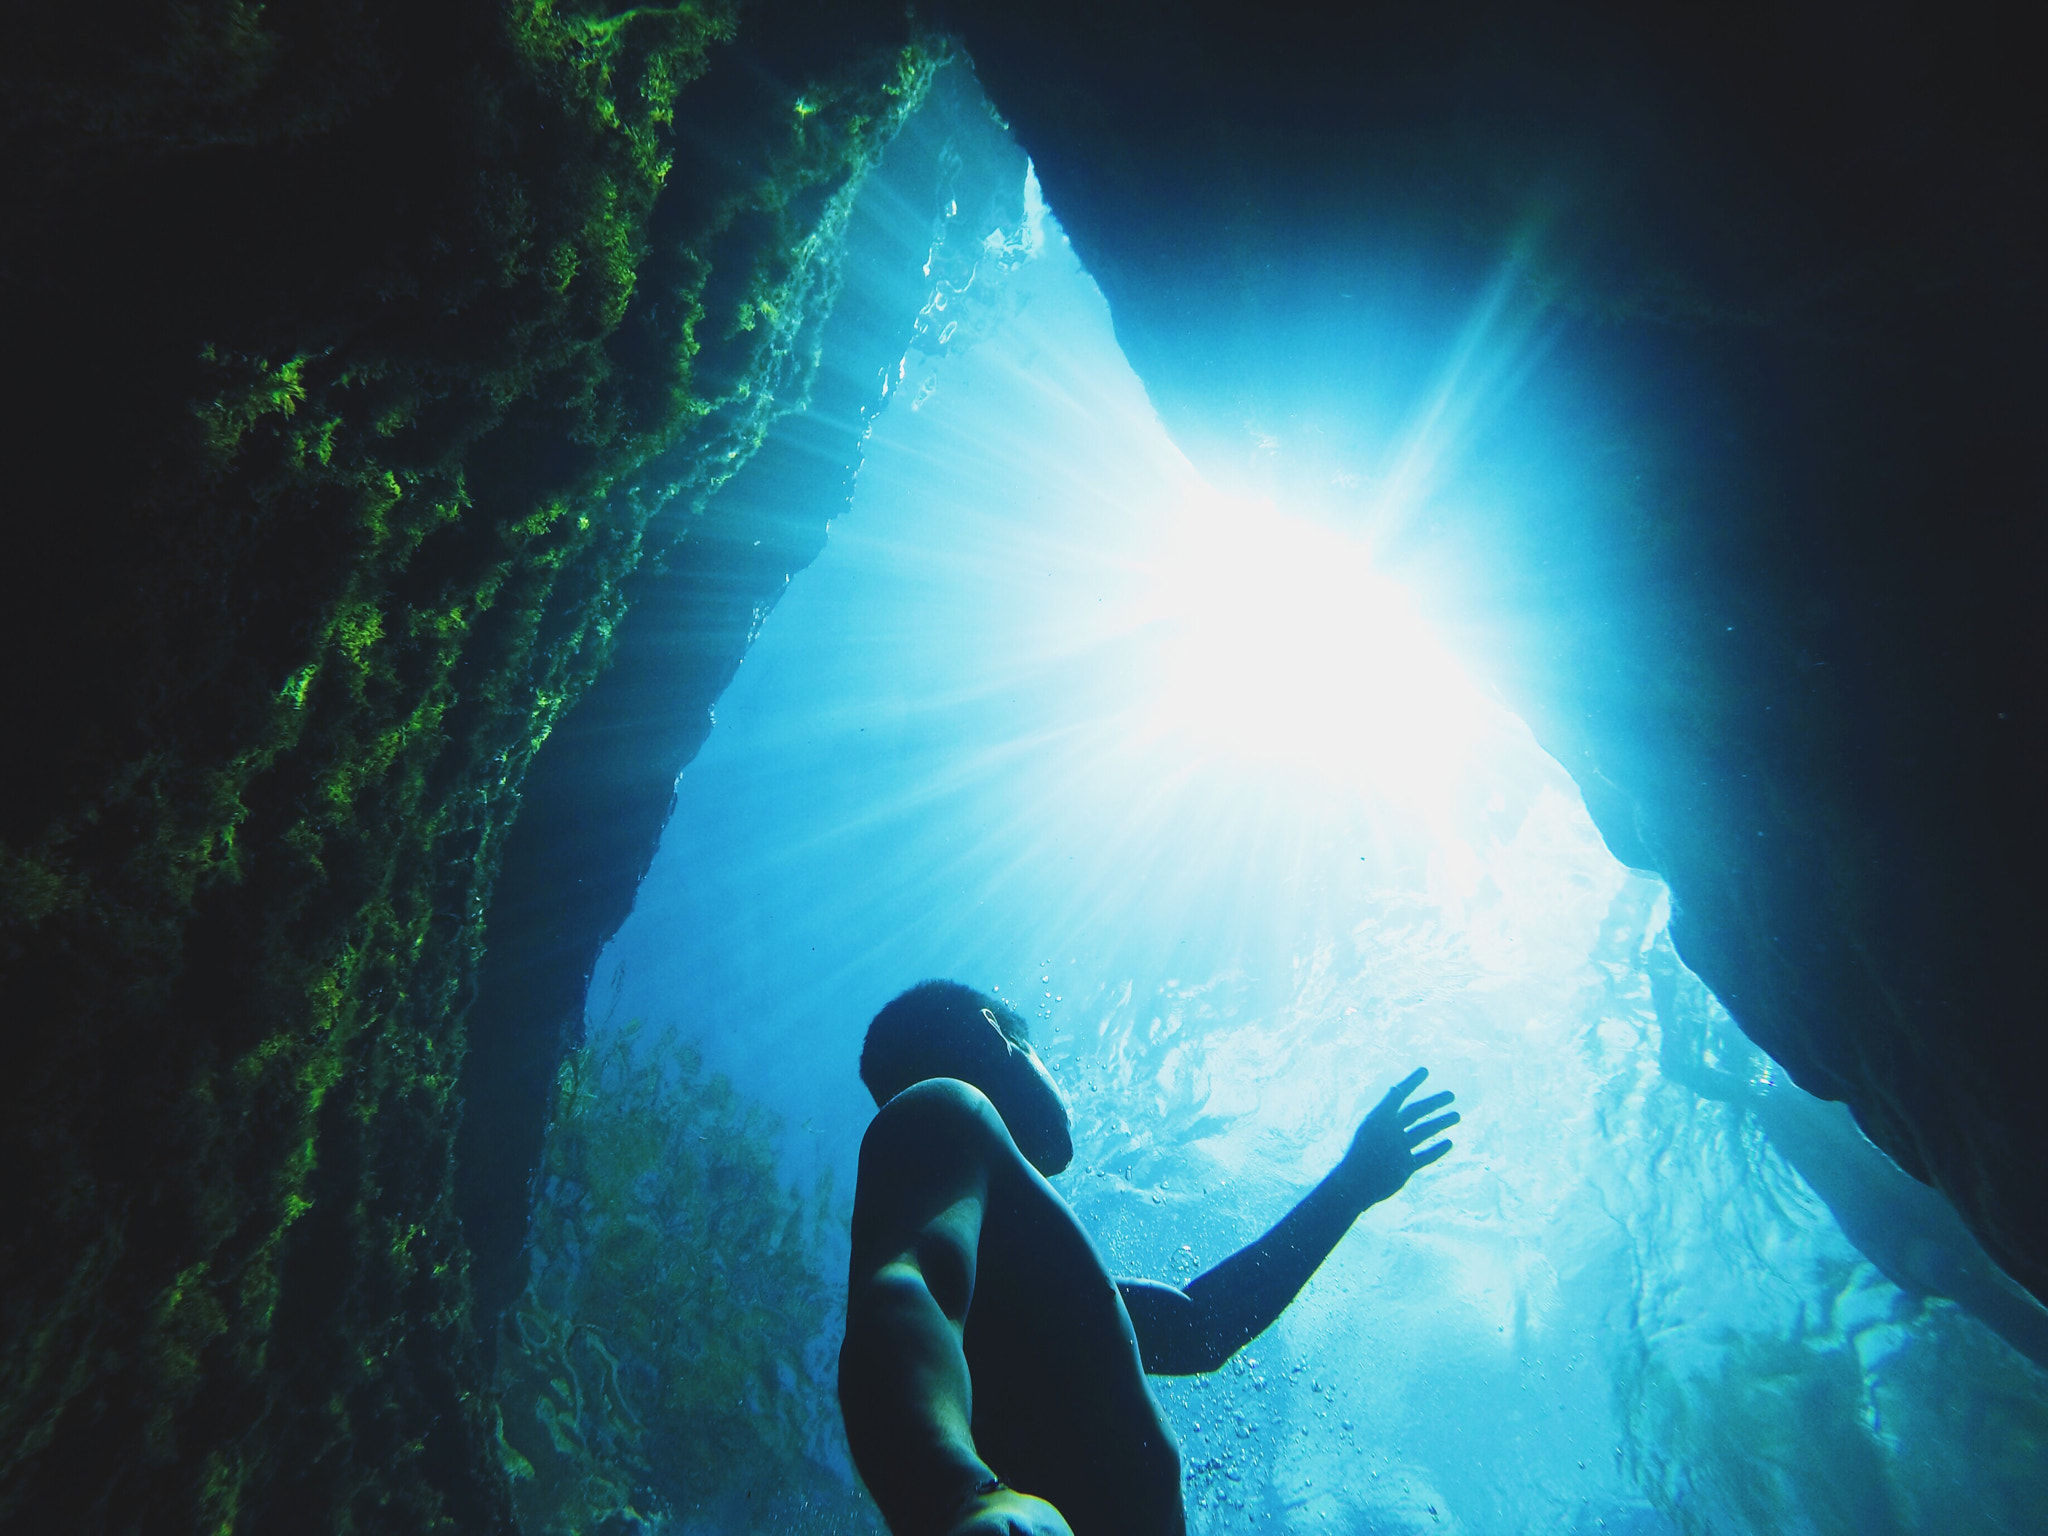  photos explore underwater photography 